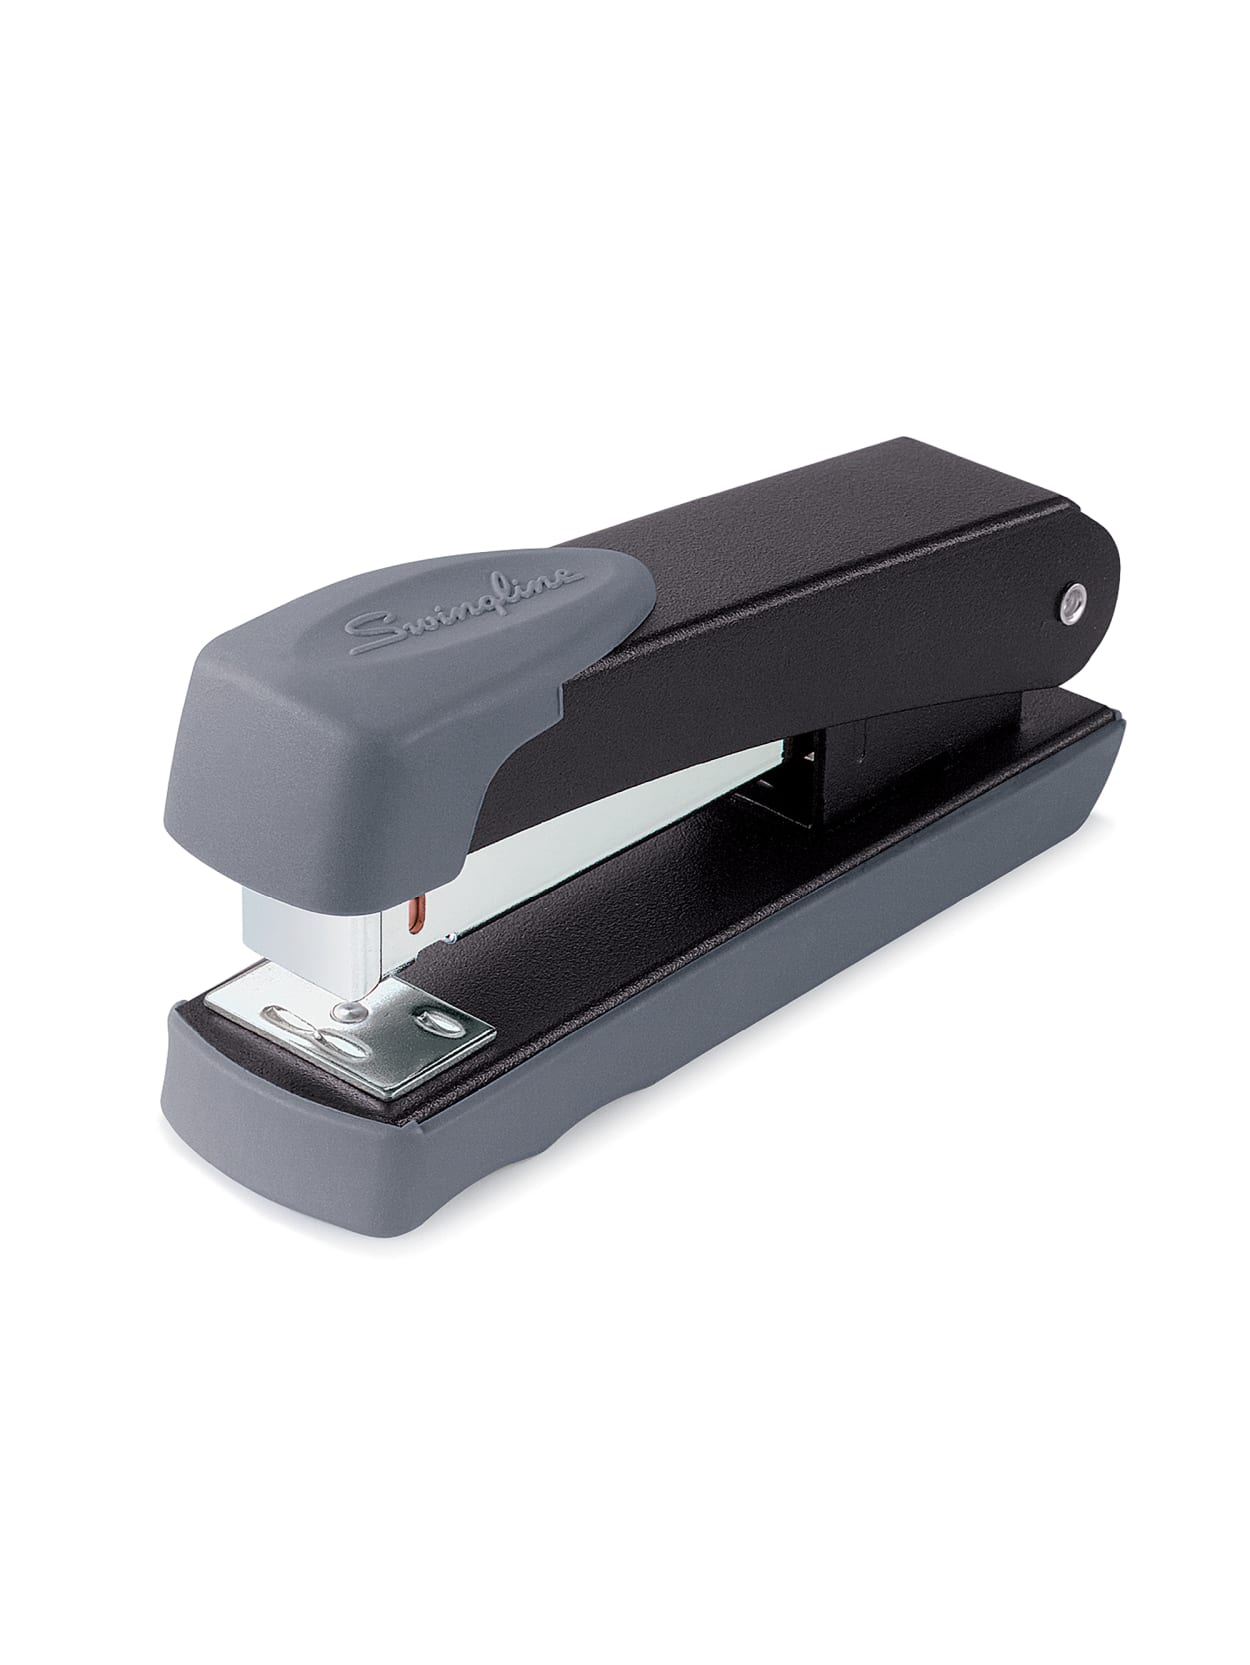 commercial stapler